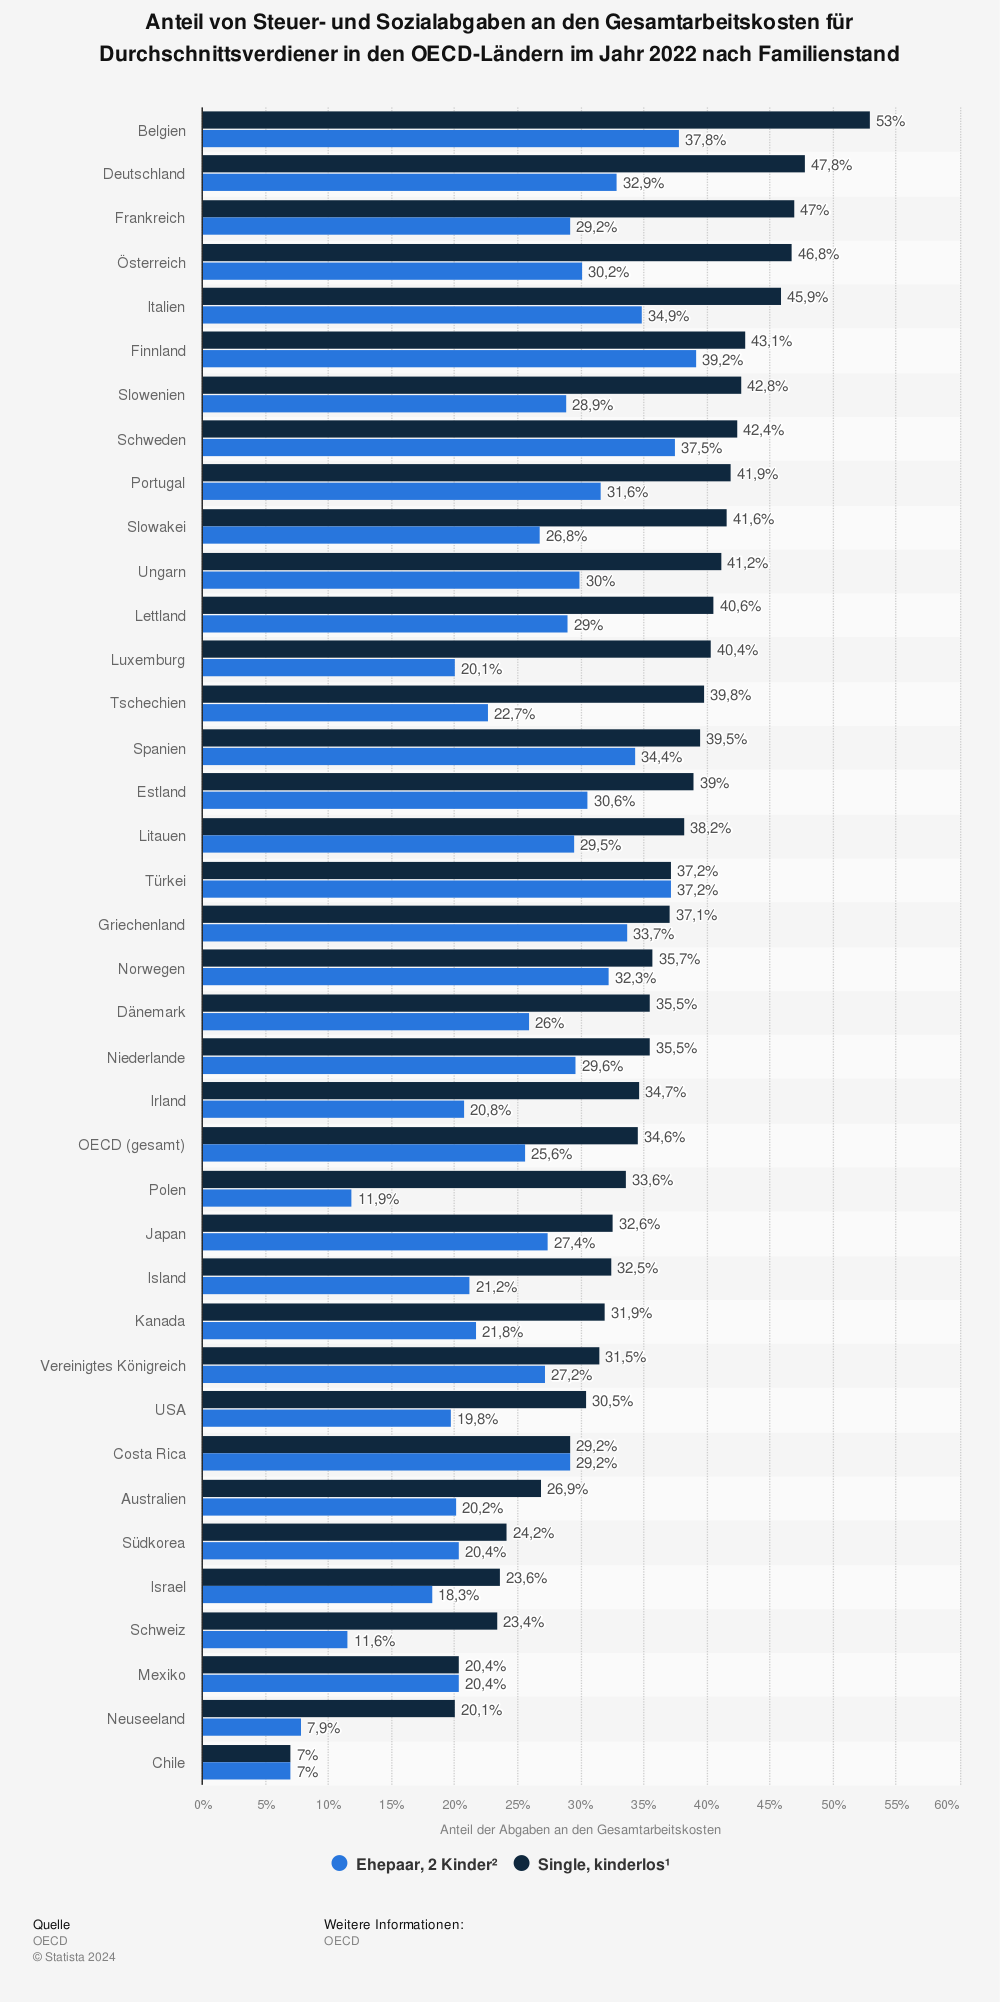 Statistik: Anteil von Steuer- und Sozialabgaben an den Gesamtarbeitskosten für Durchschnittsverdiener in den OECD-Ländern im Jahr 2019 nach Familienstand | Statista